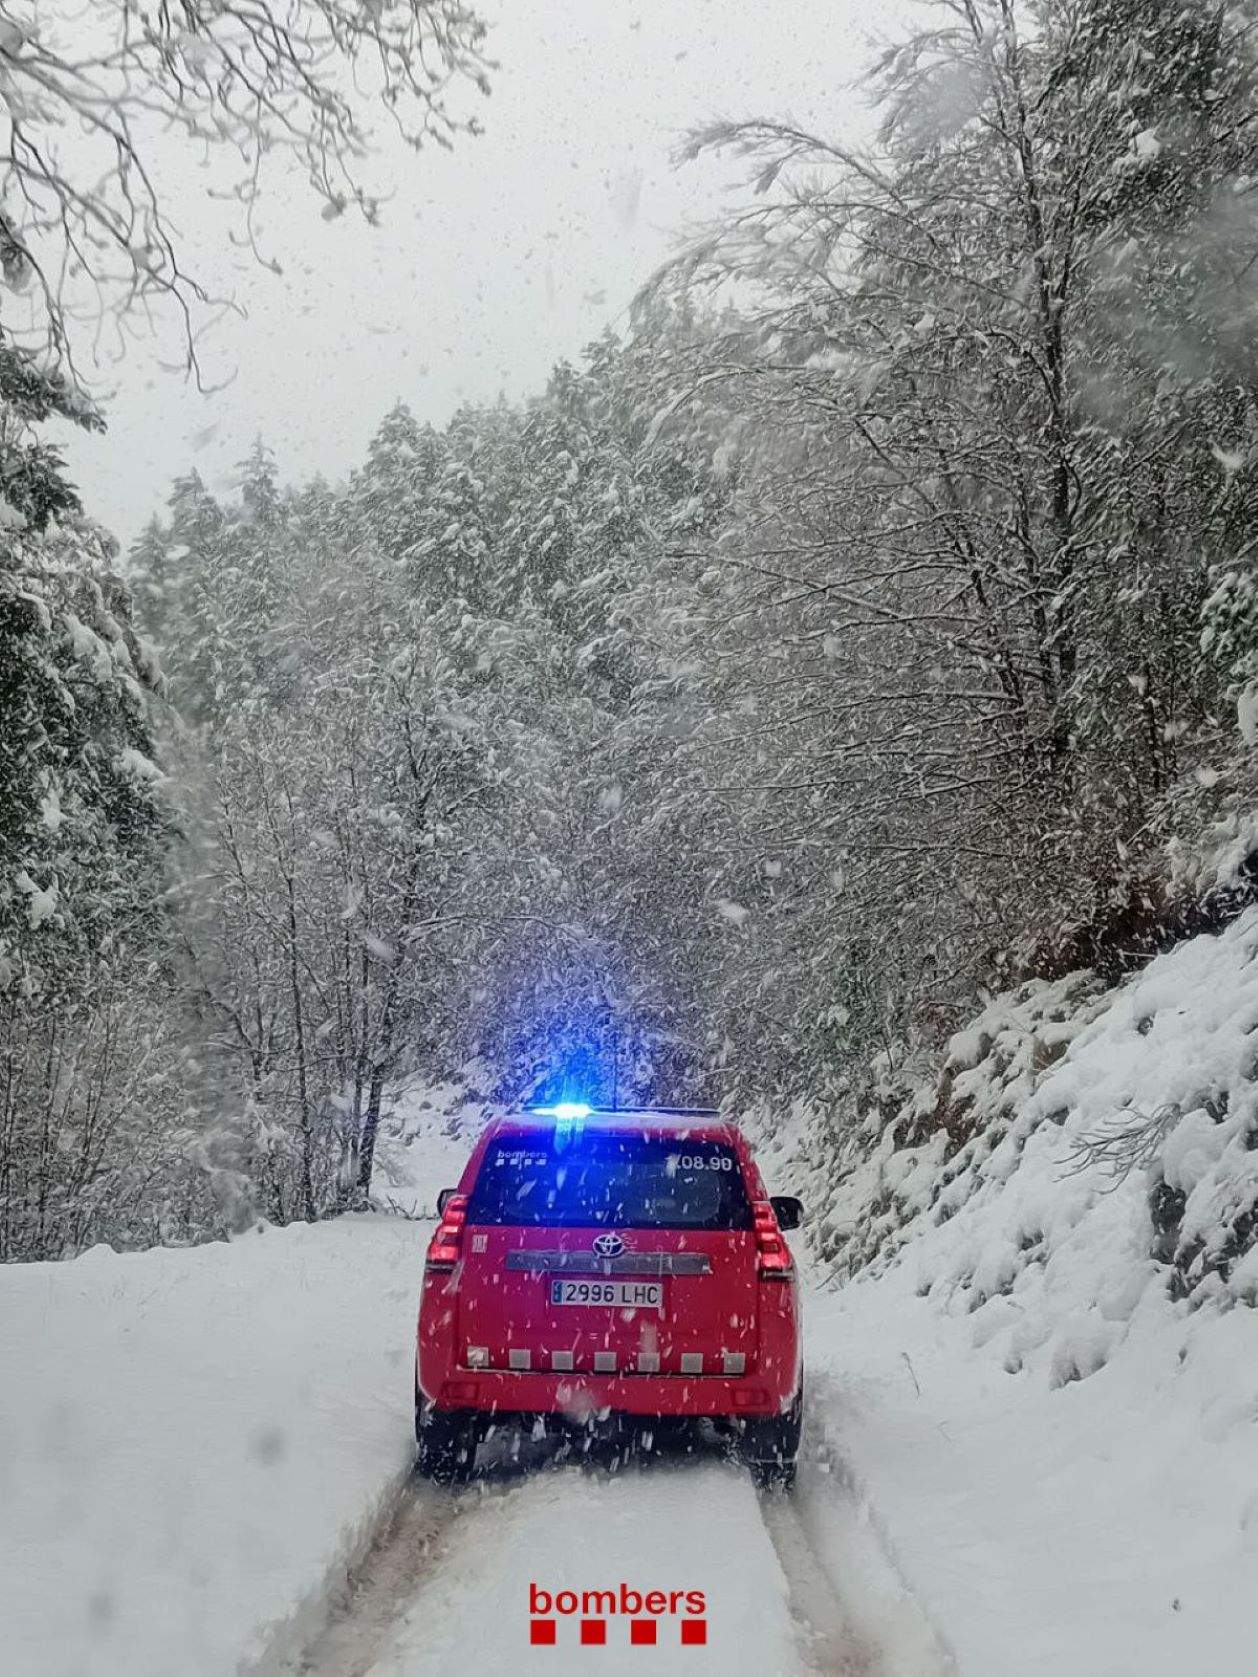 Desactivada ya la alerta por nevadas, el 112 ha recibido casi 700 llamadas por el temporal desde ayer